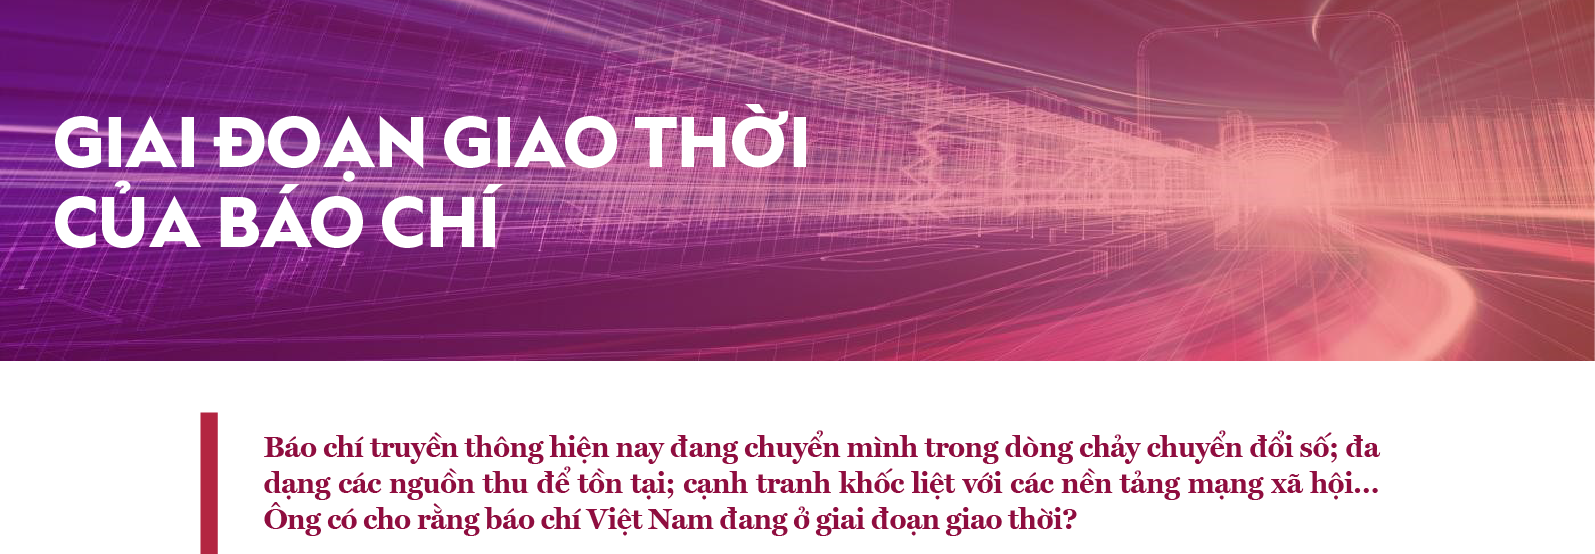 Báo chí Việt Nam đang độ giao thời - Ảnh 8